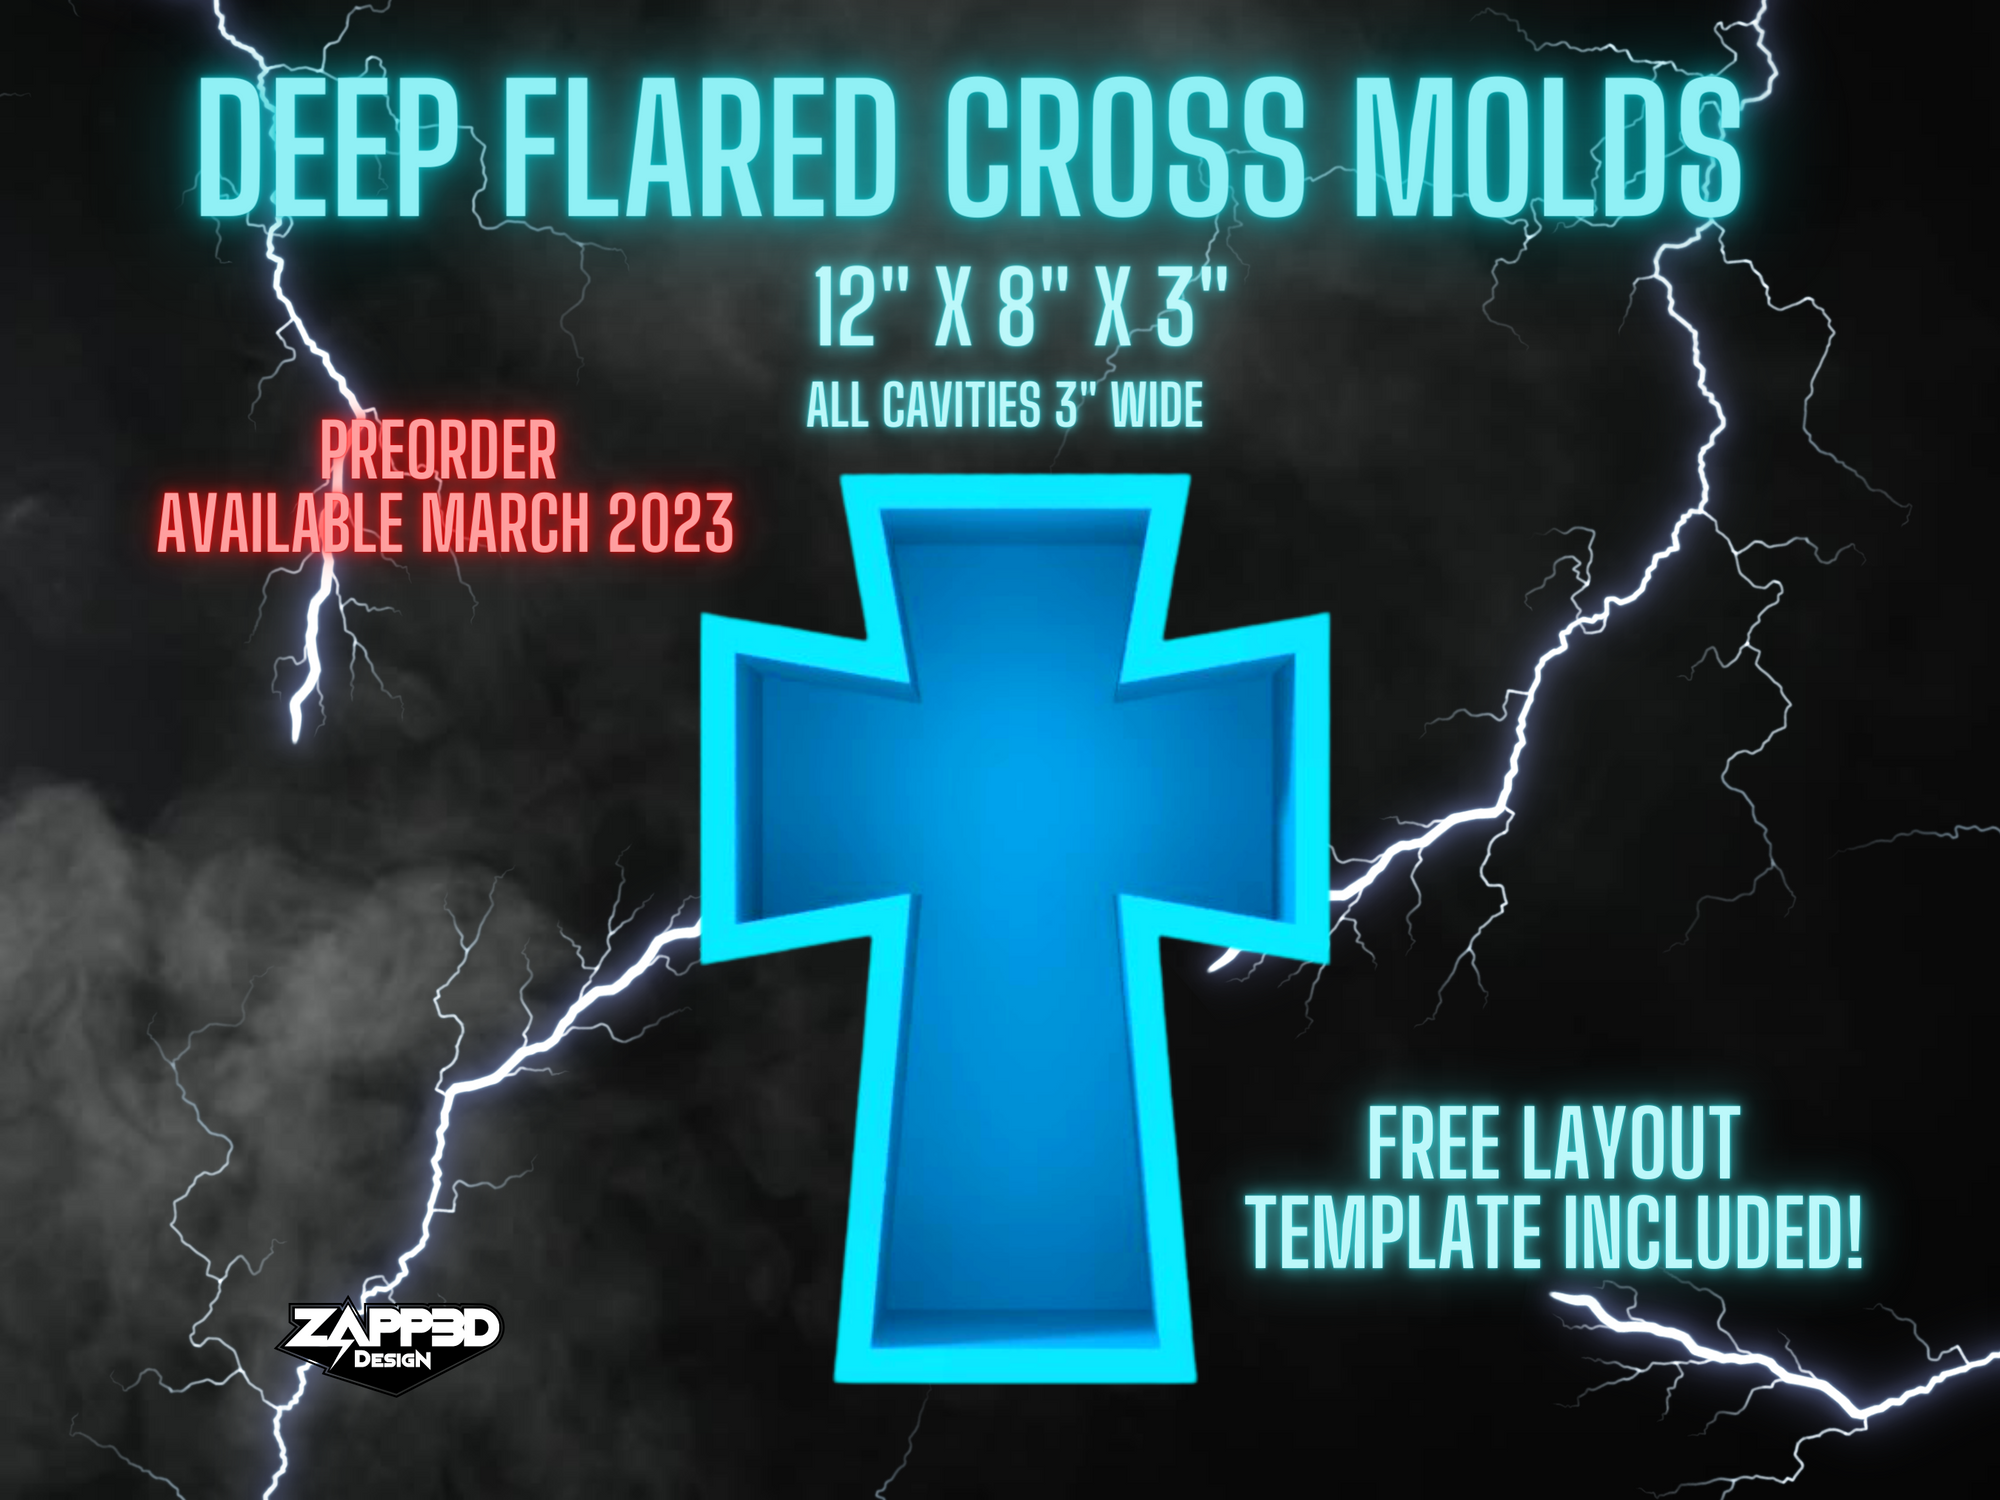 Flared Cross Mold, Cross Mold | 12"x 8"x 3" Deep | ULTRA Quality | Memorial Molds, Block Mold, Flower Preservation Mold, 3" Deep Molds